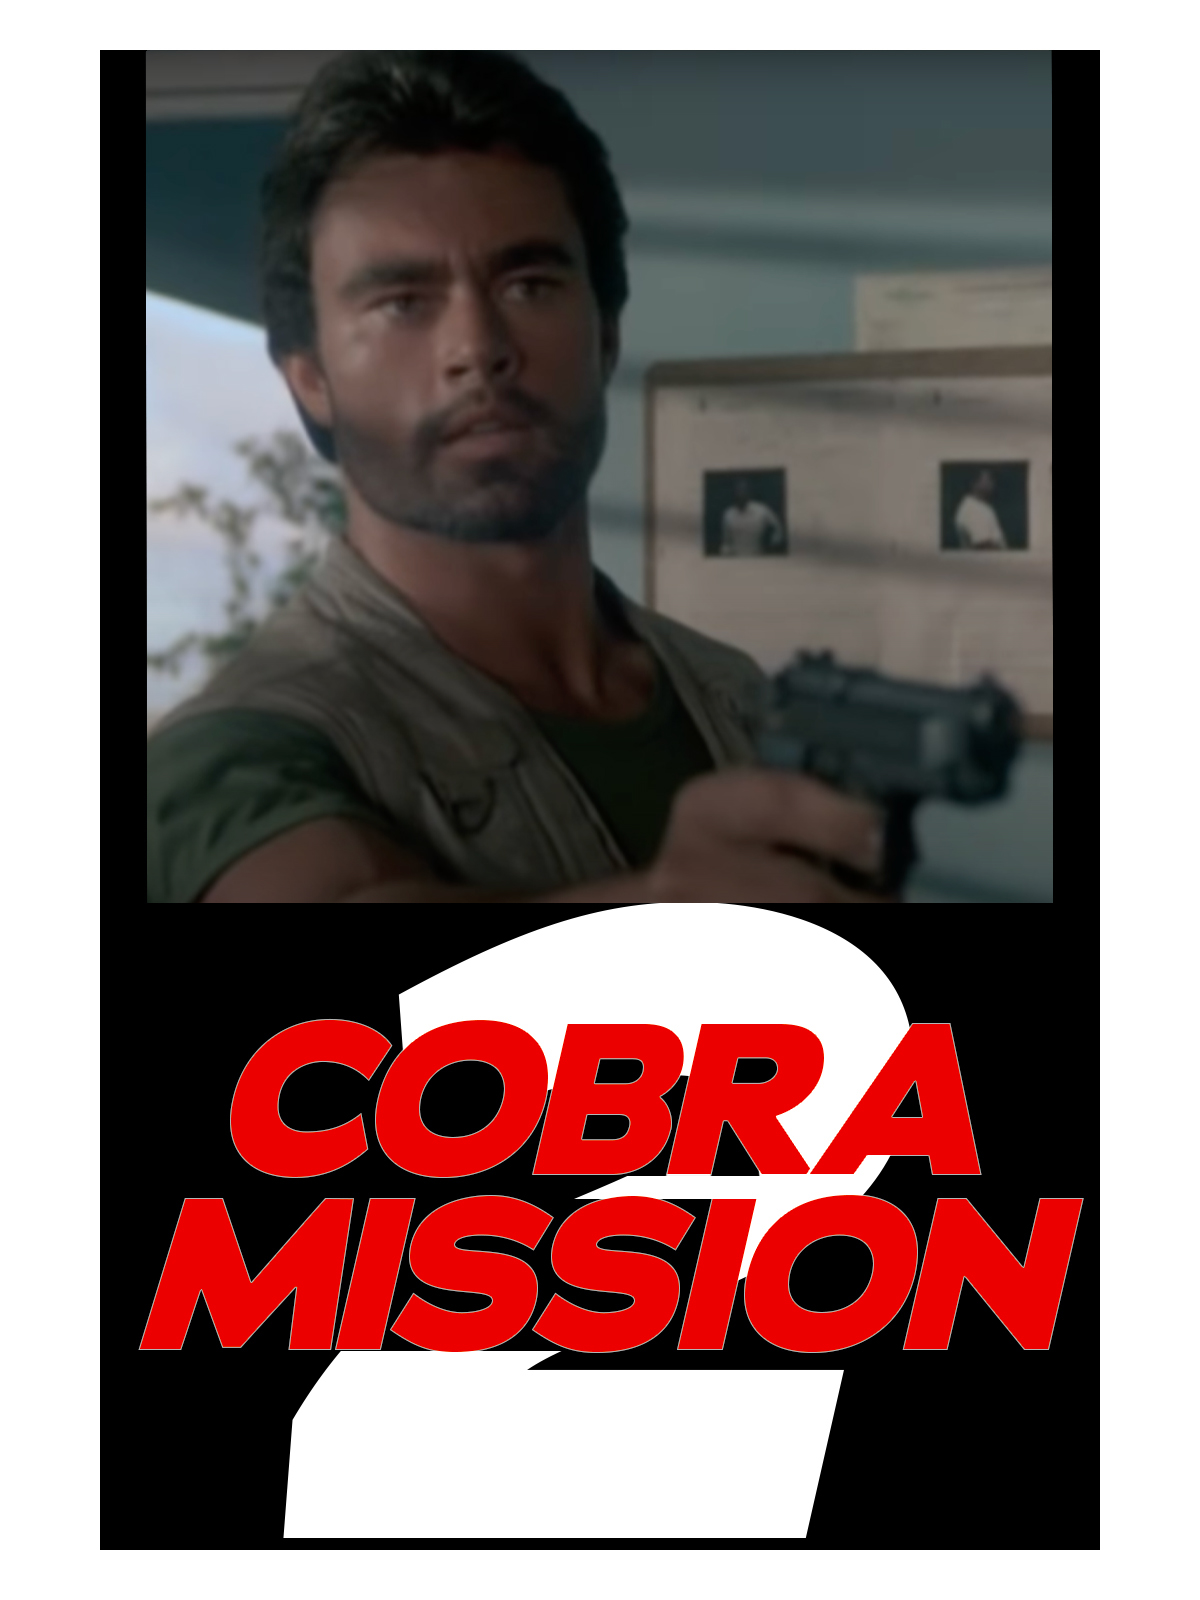 Cobra Mission II